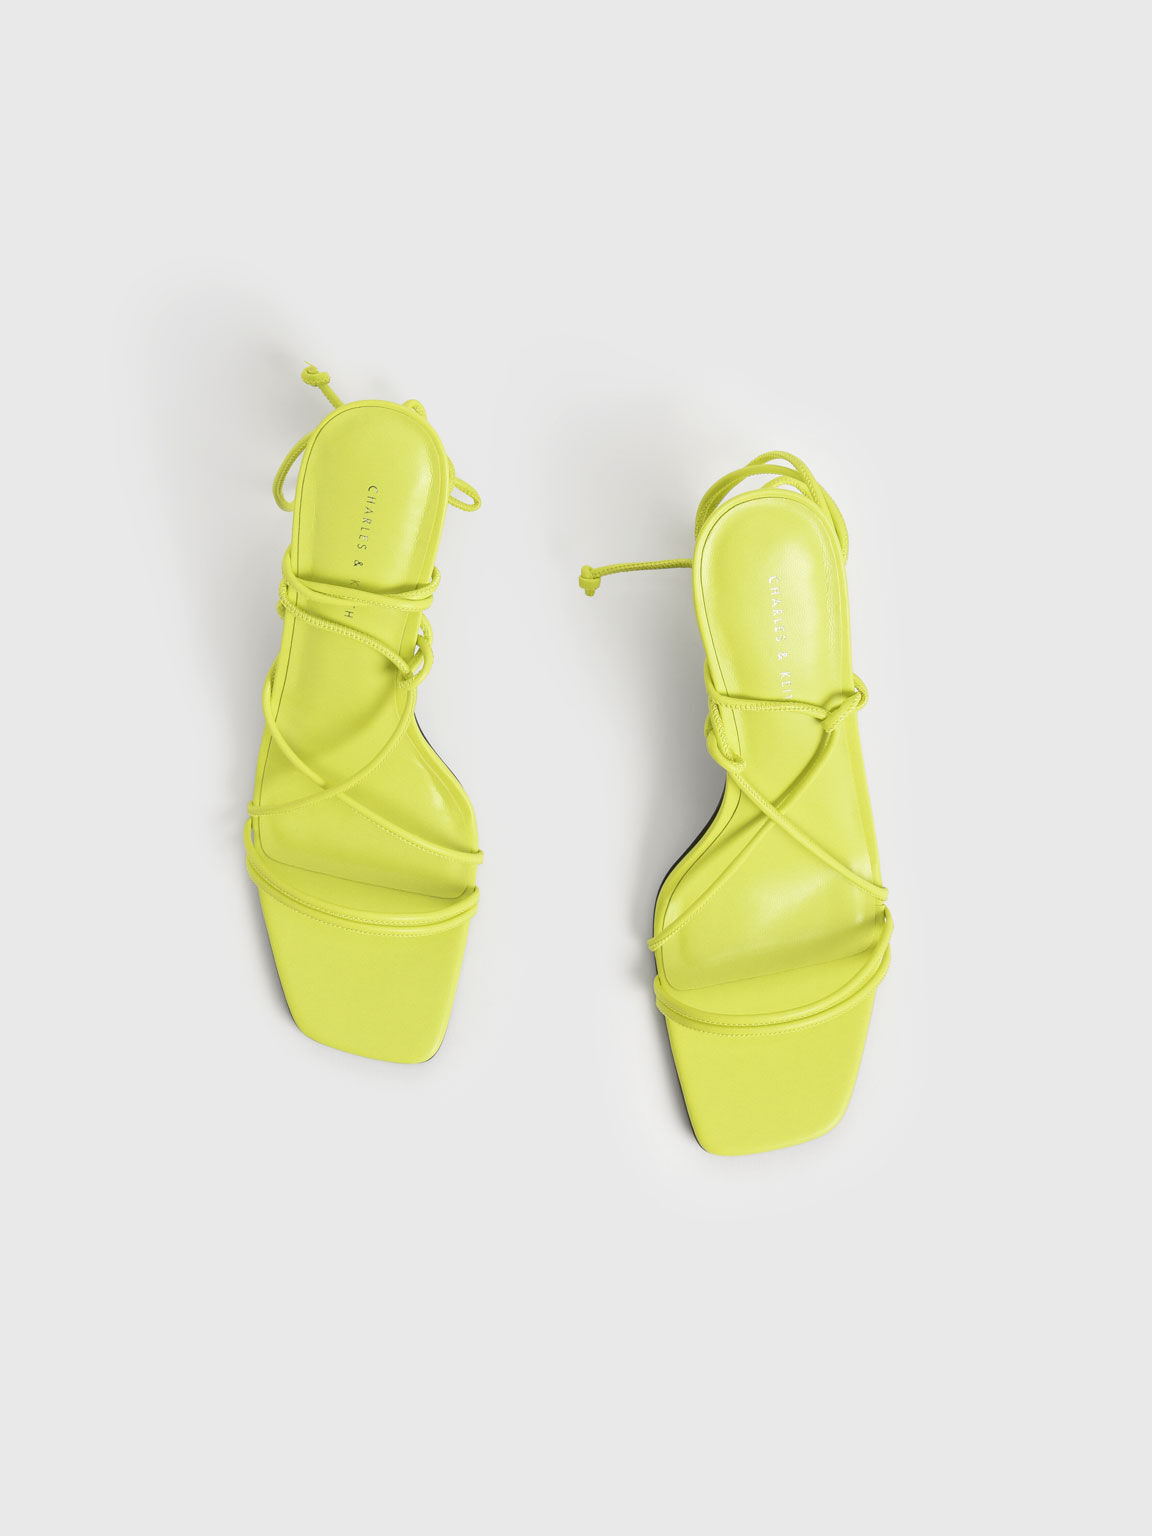 Strappy Tie-Around Stiletto Sandals, Yellow, hi-res